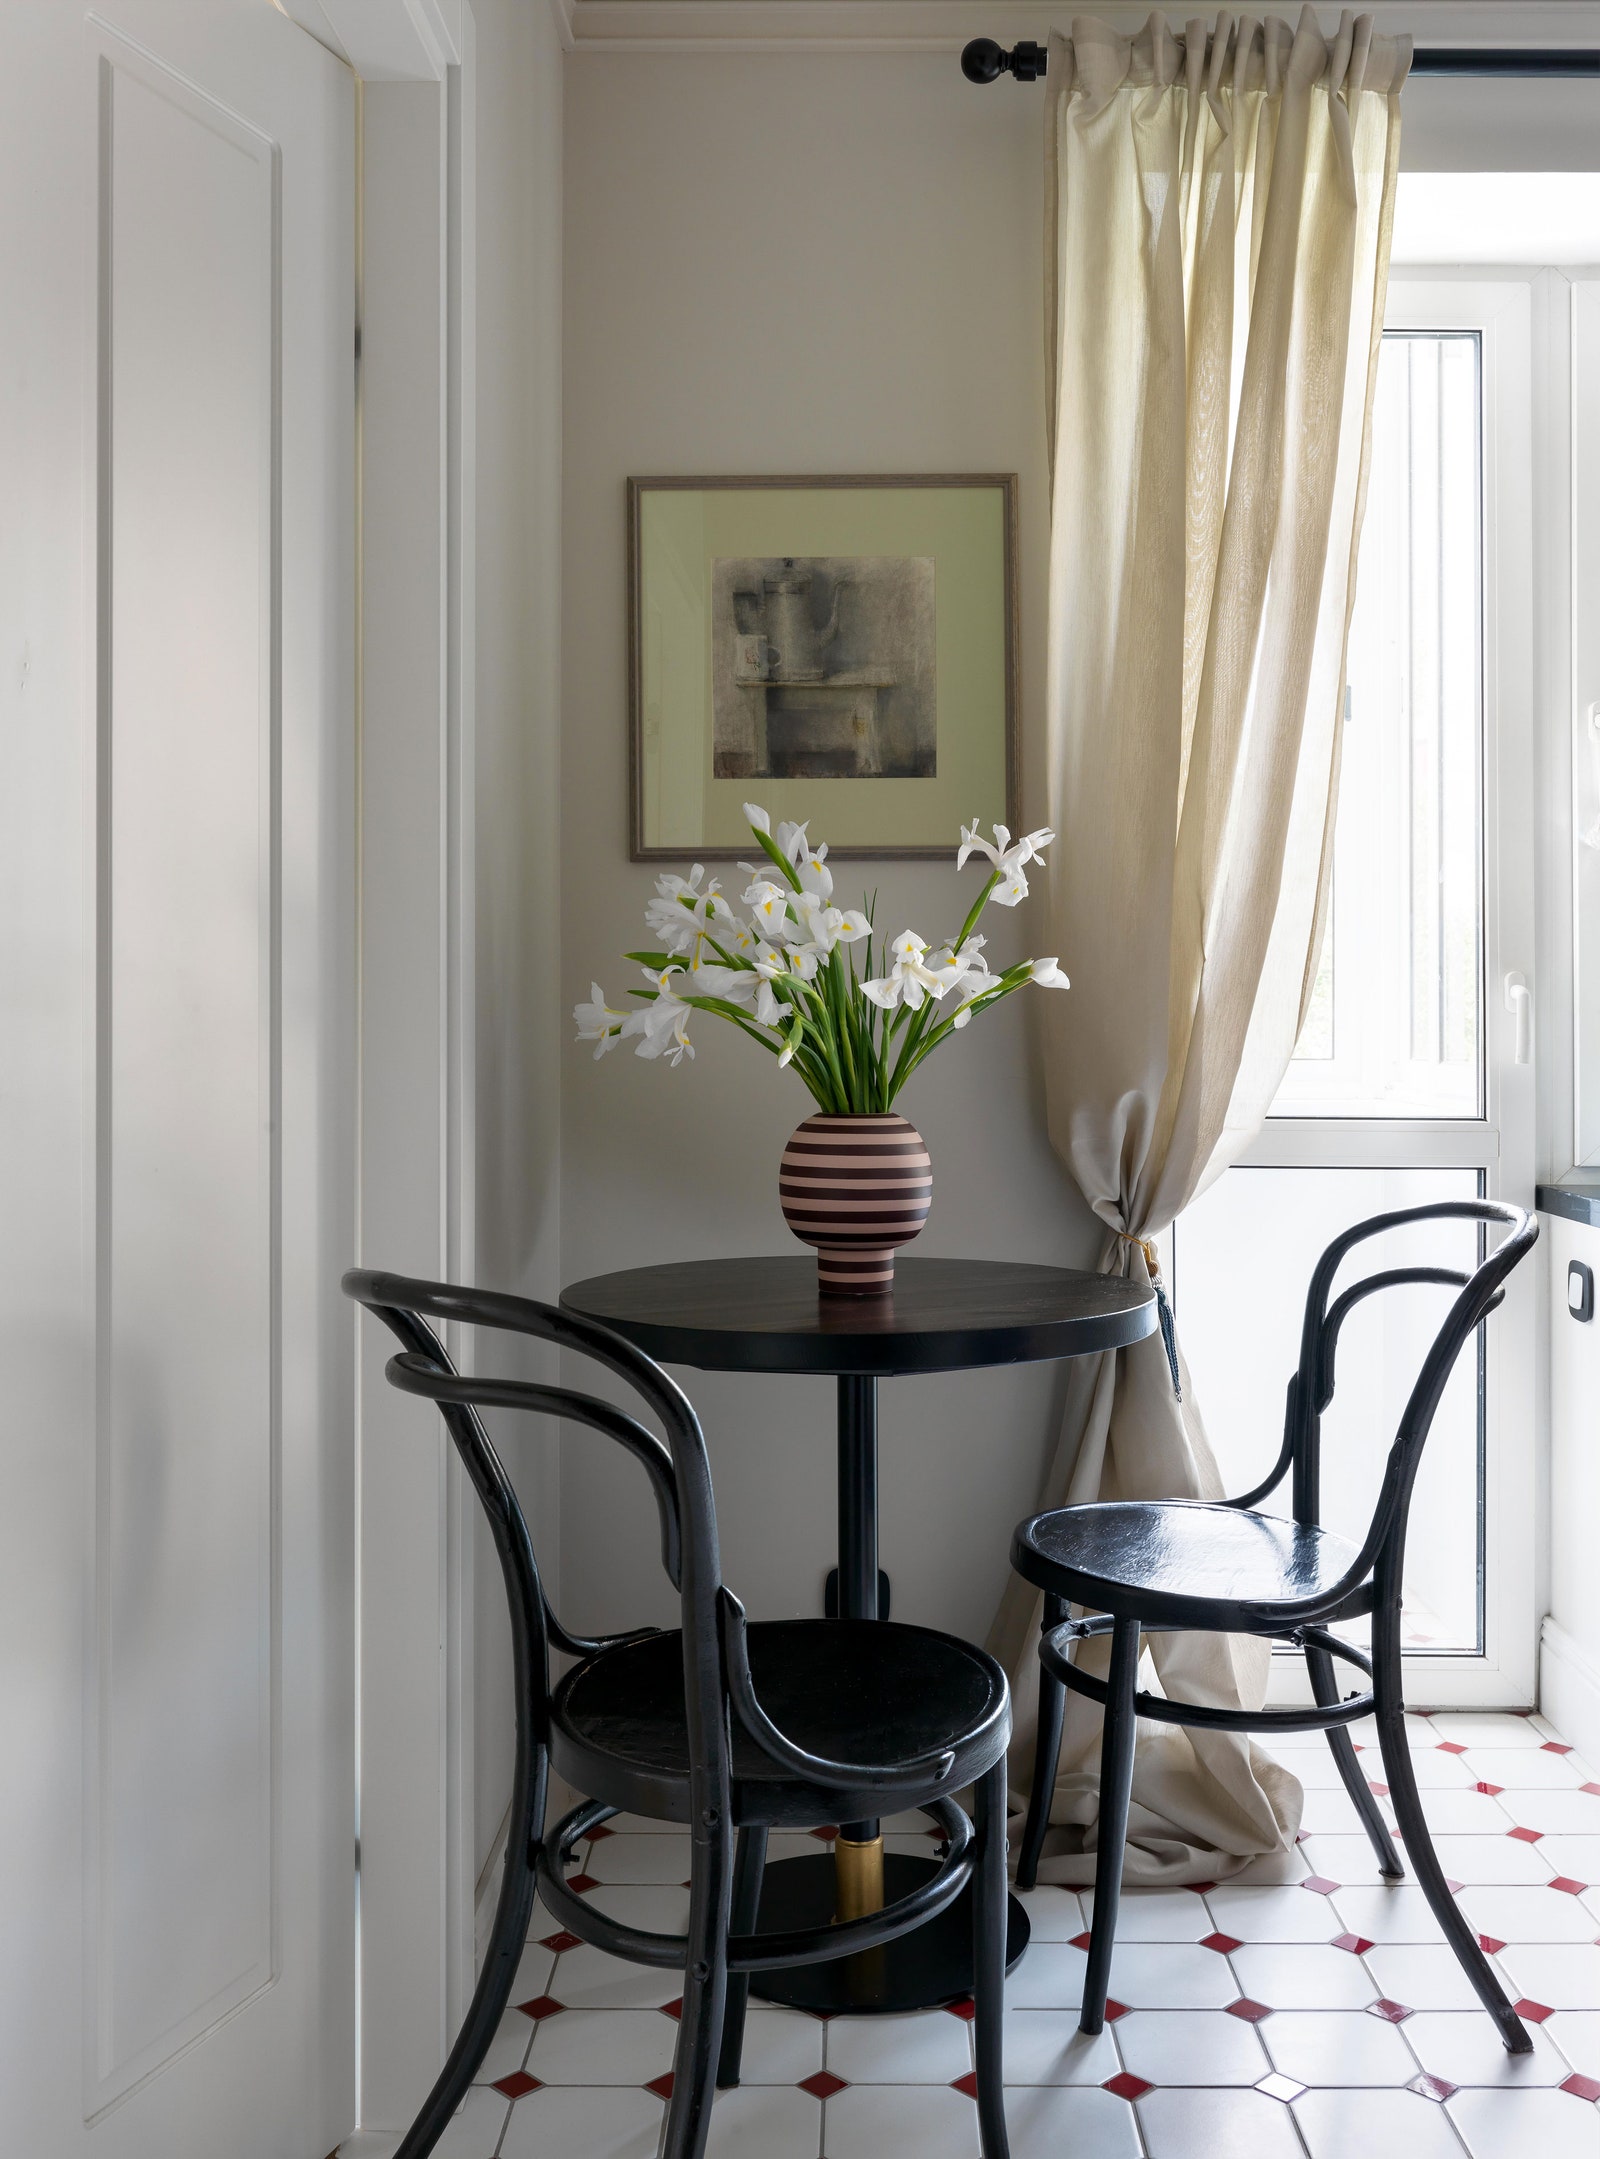 Фрагмент кухни. Стол изготовлен на заказ по ­эскизу дизайнеров винтажные стулья модель № 14 Thonet ваза AYTM на стене...